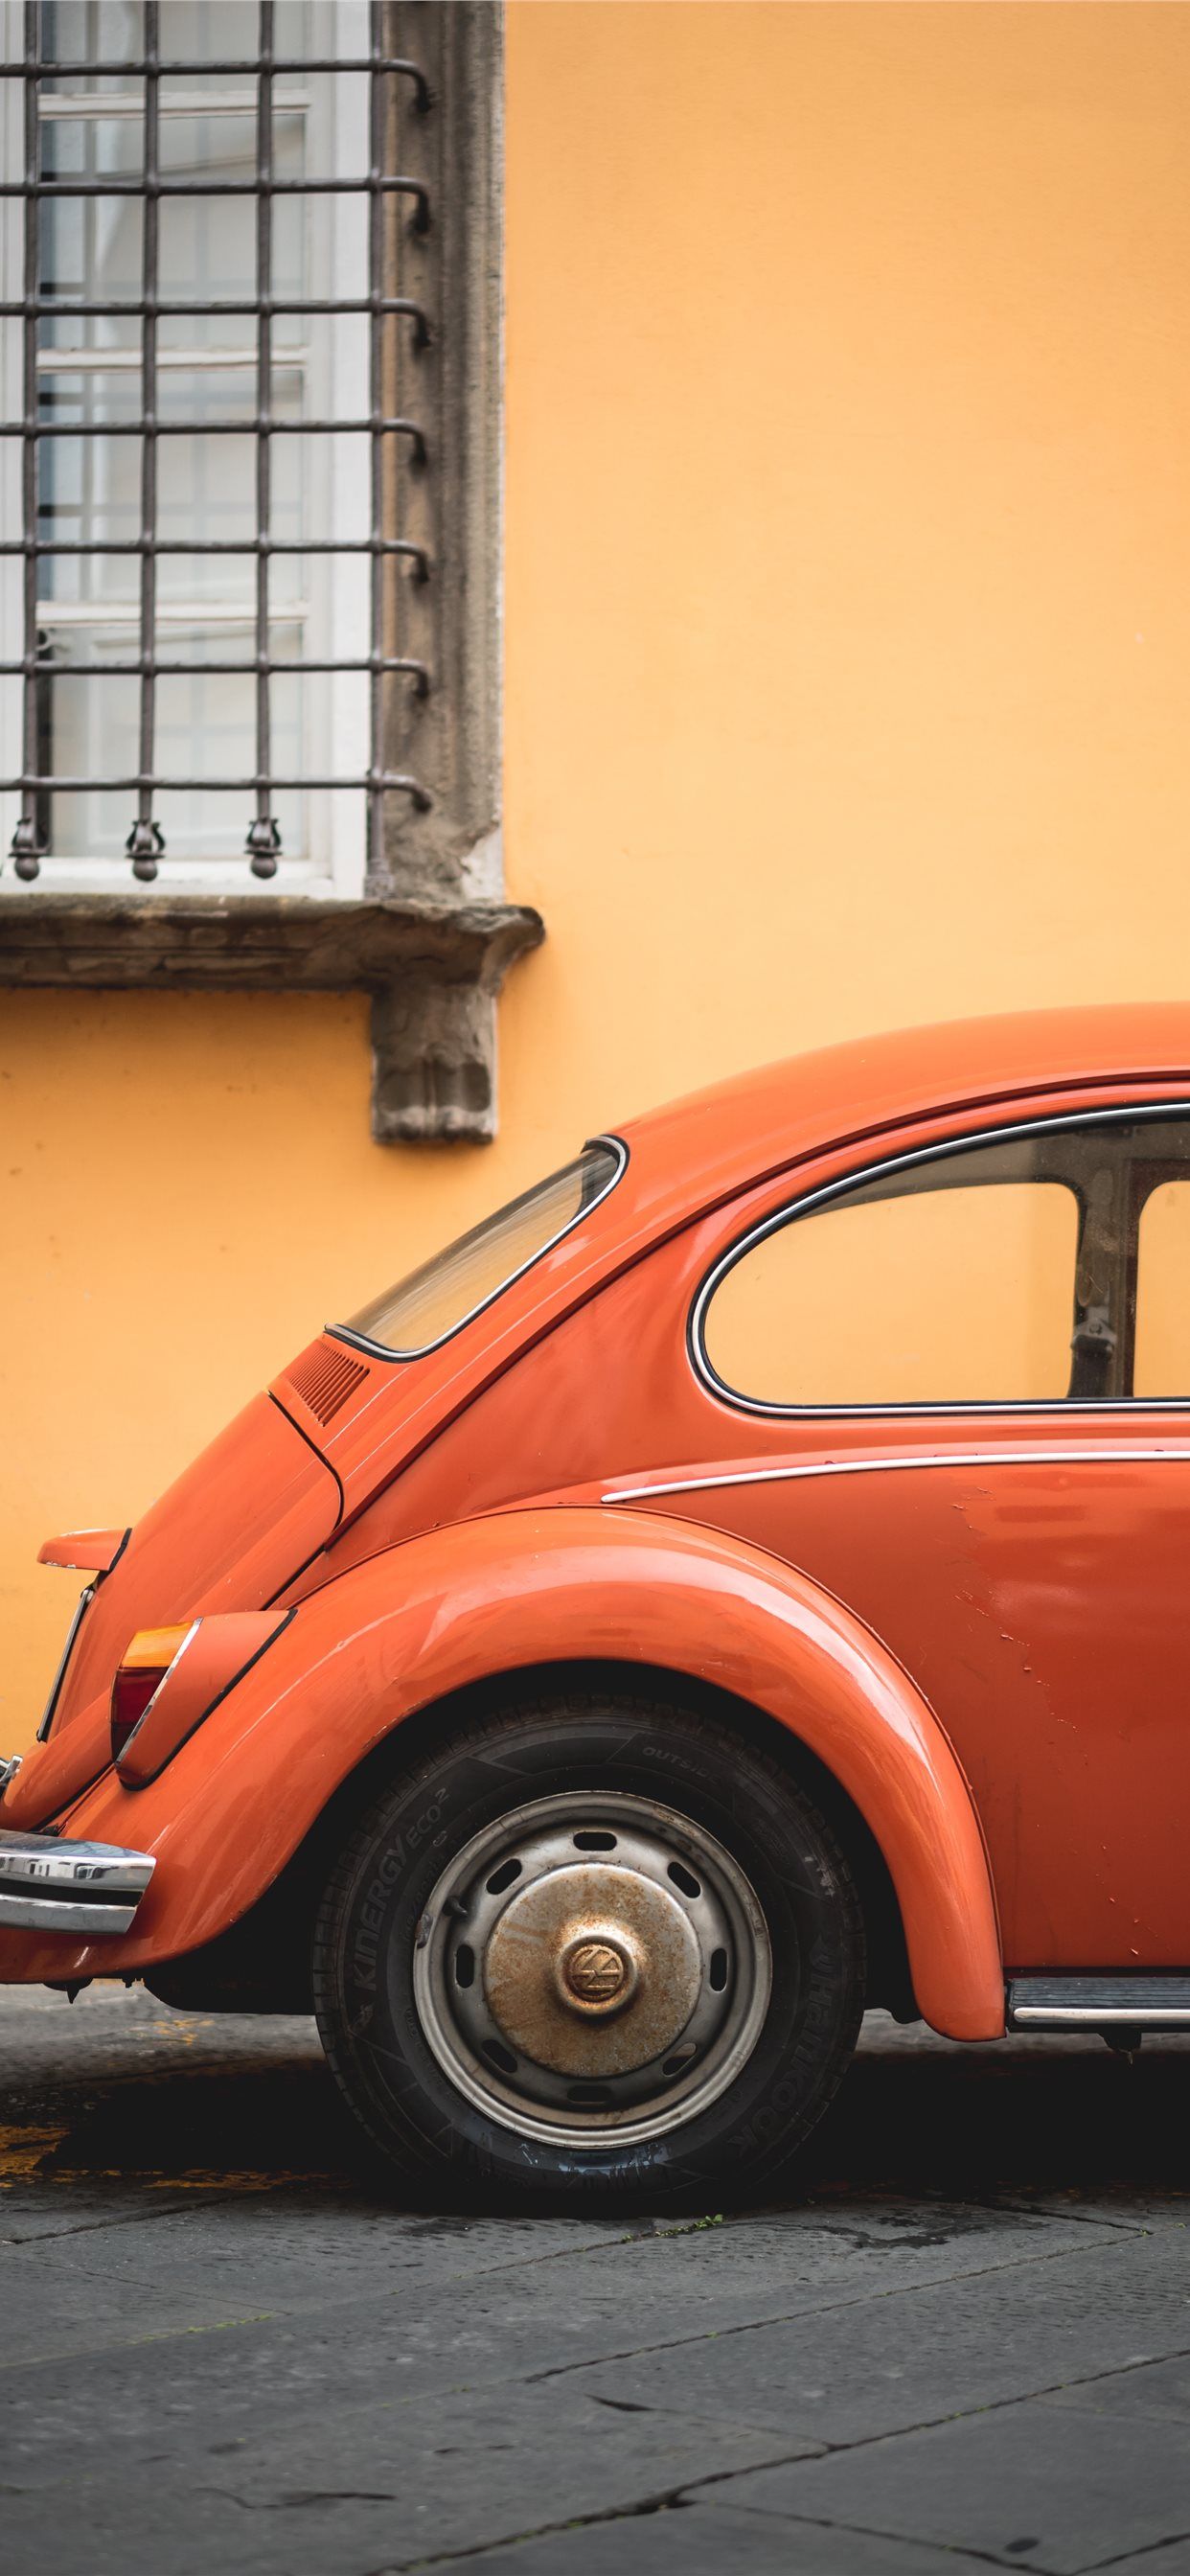 shallow focus photo of orange Volkswagen Beetle iPhone X Wallpaper Free Download